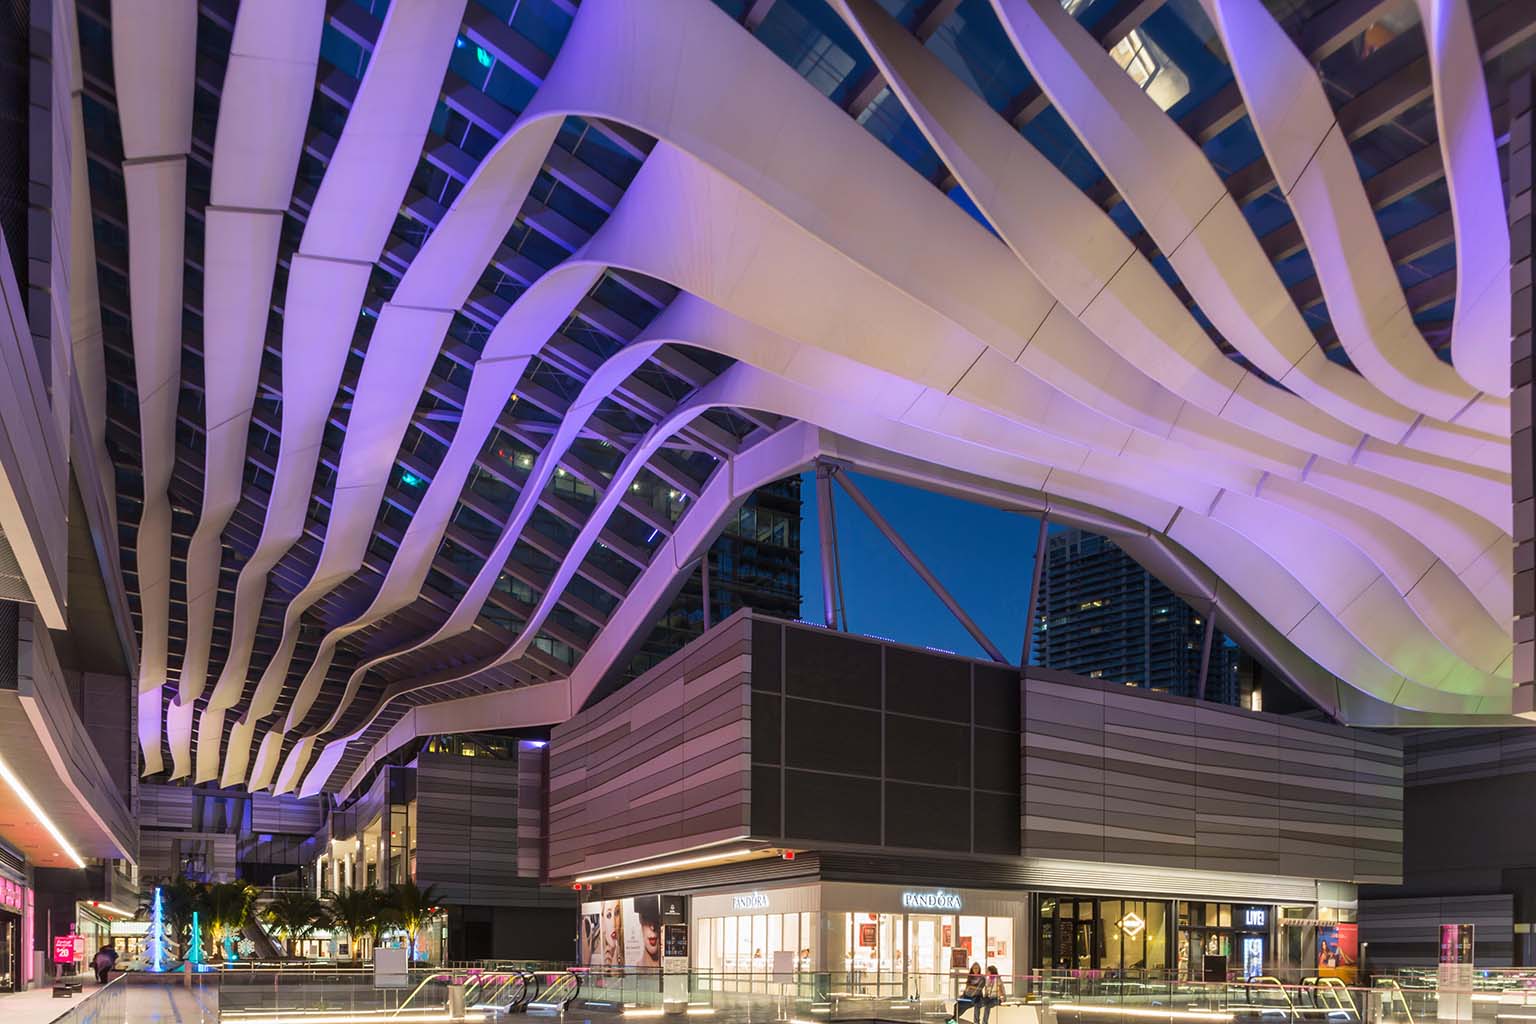 Brickell City Centre’s high-tech architecture.